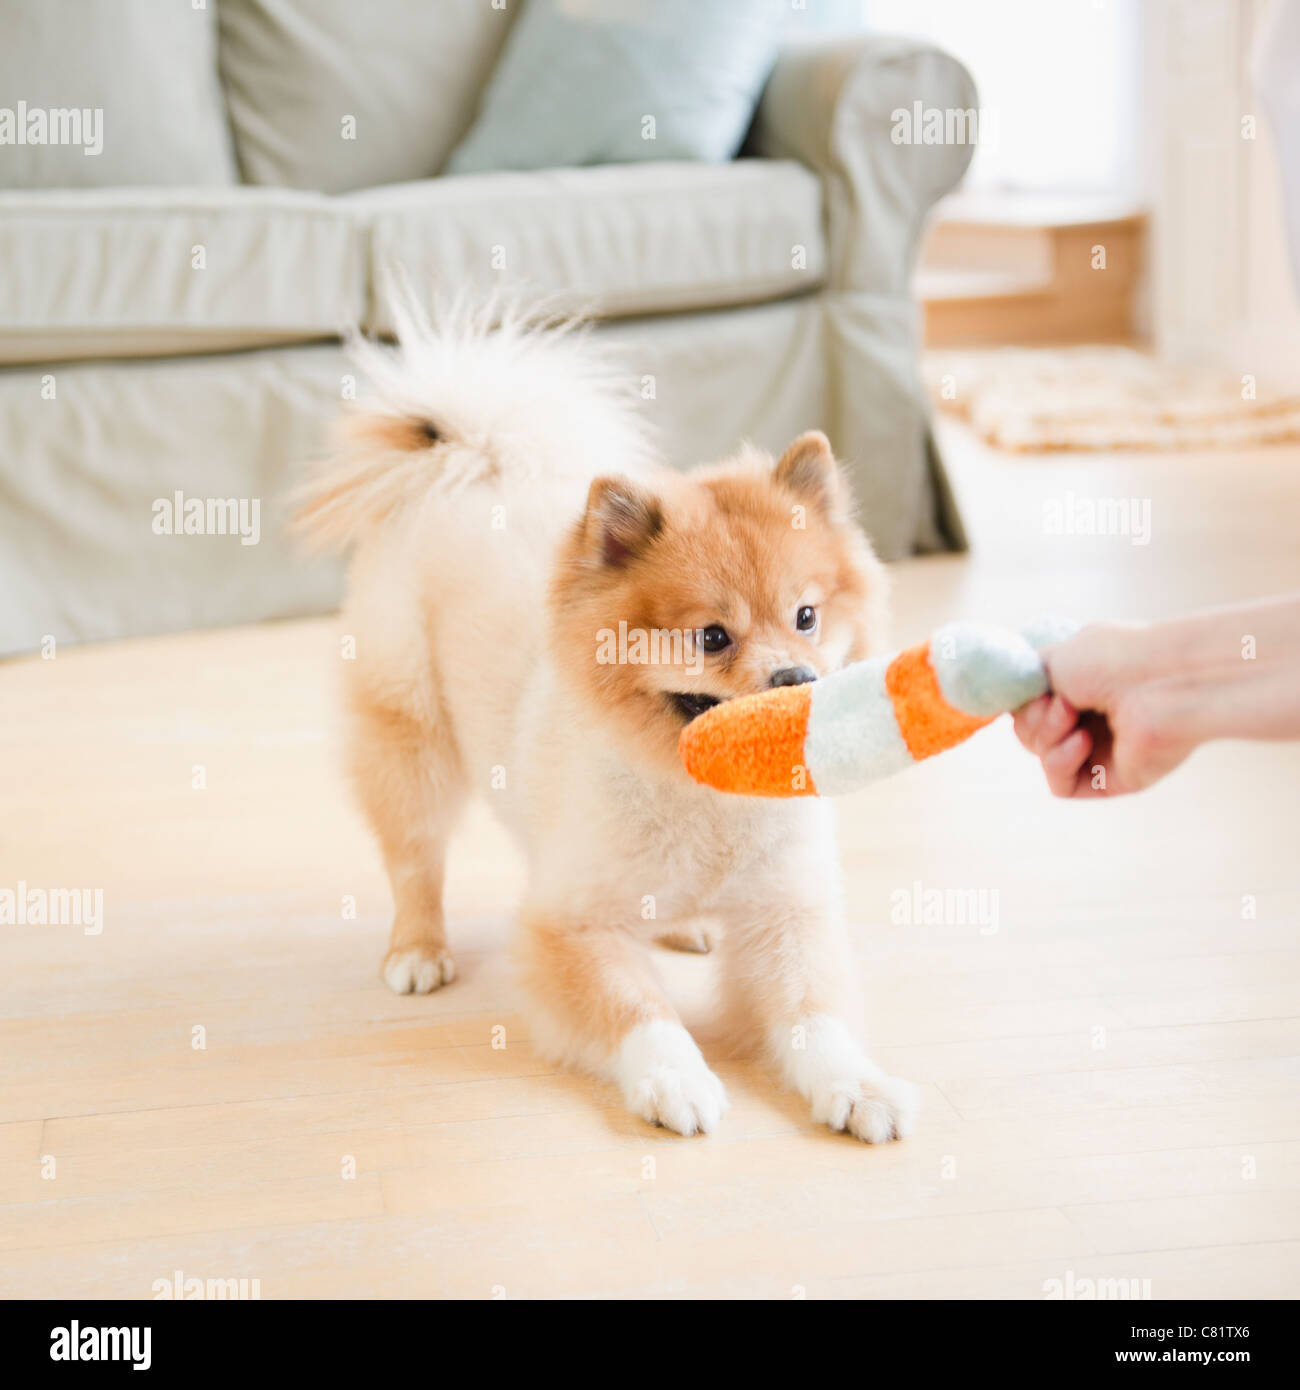 Pomeranian dog playing with dog toy Stock Photo